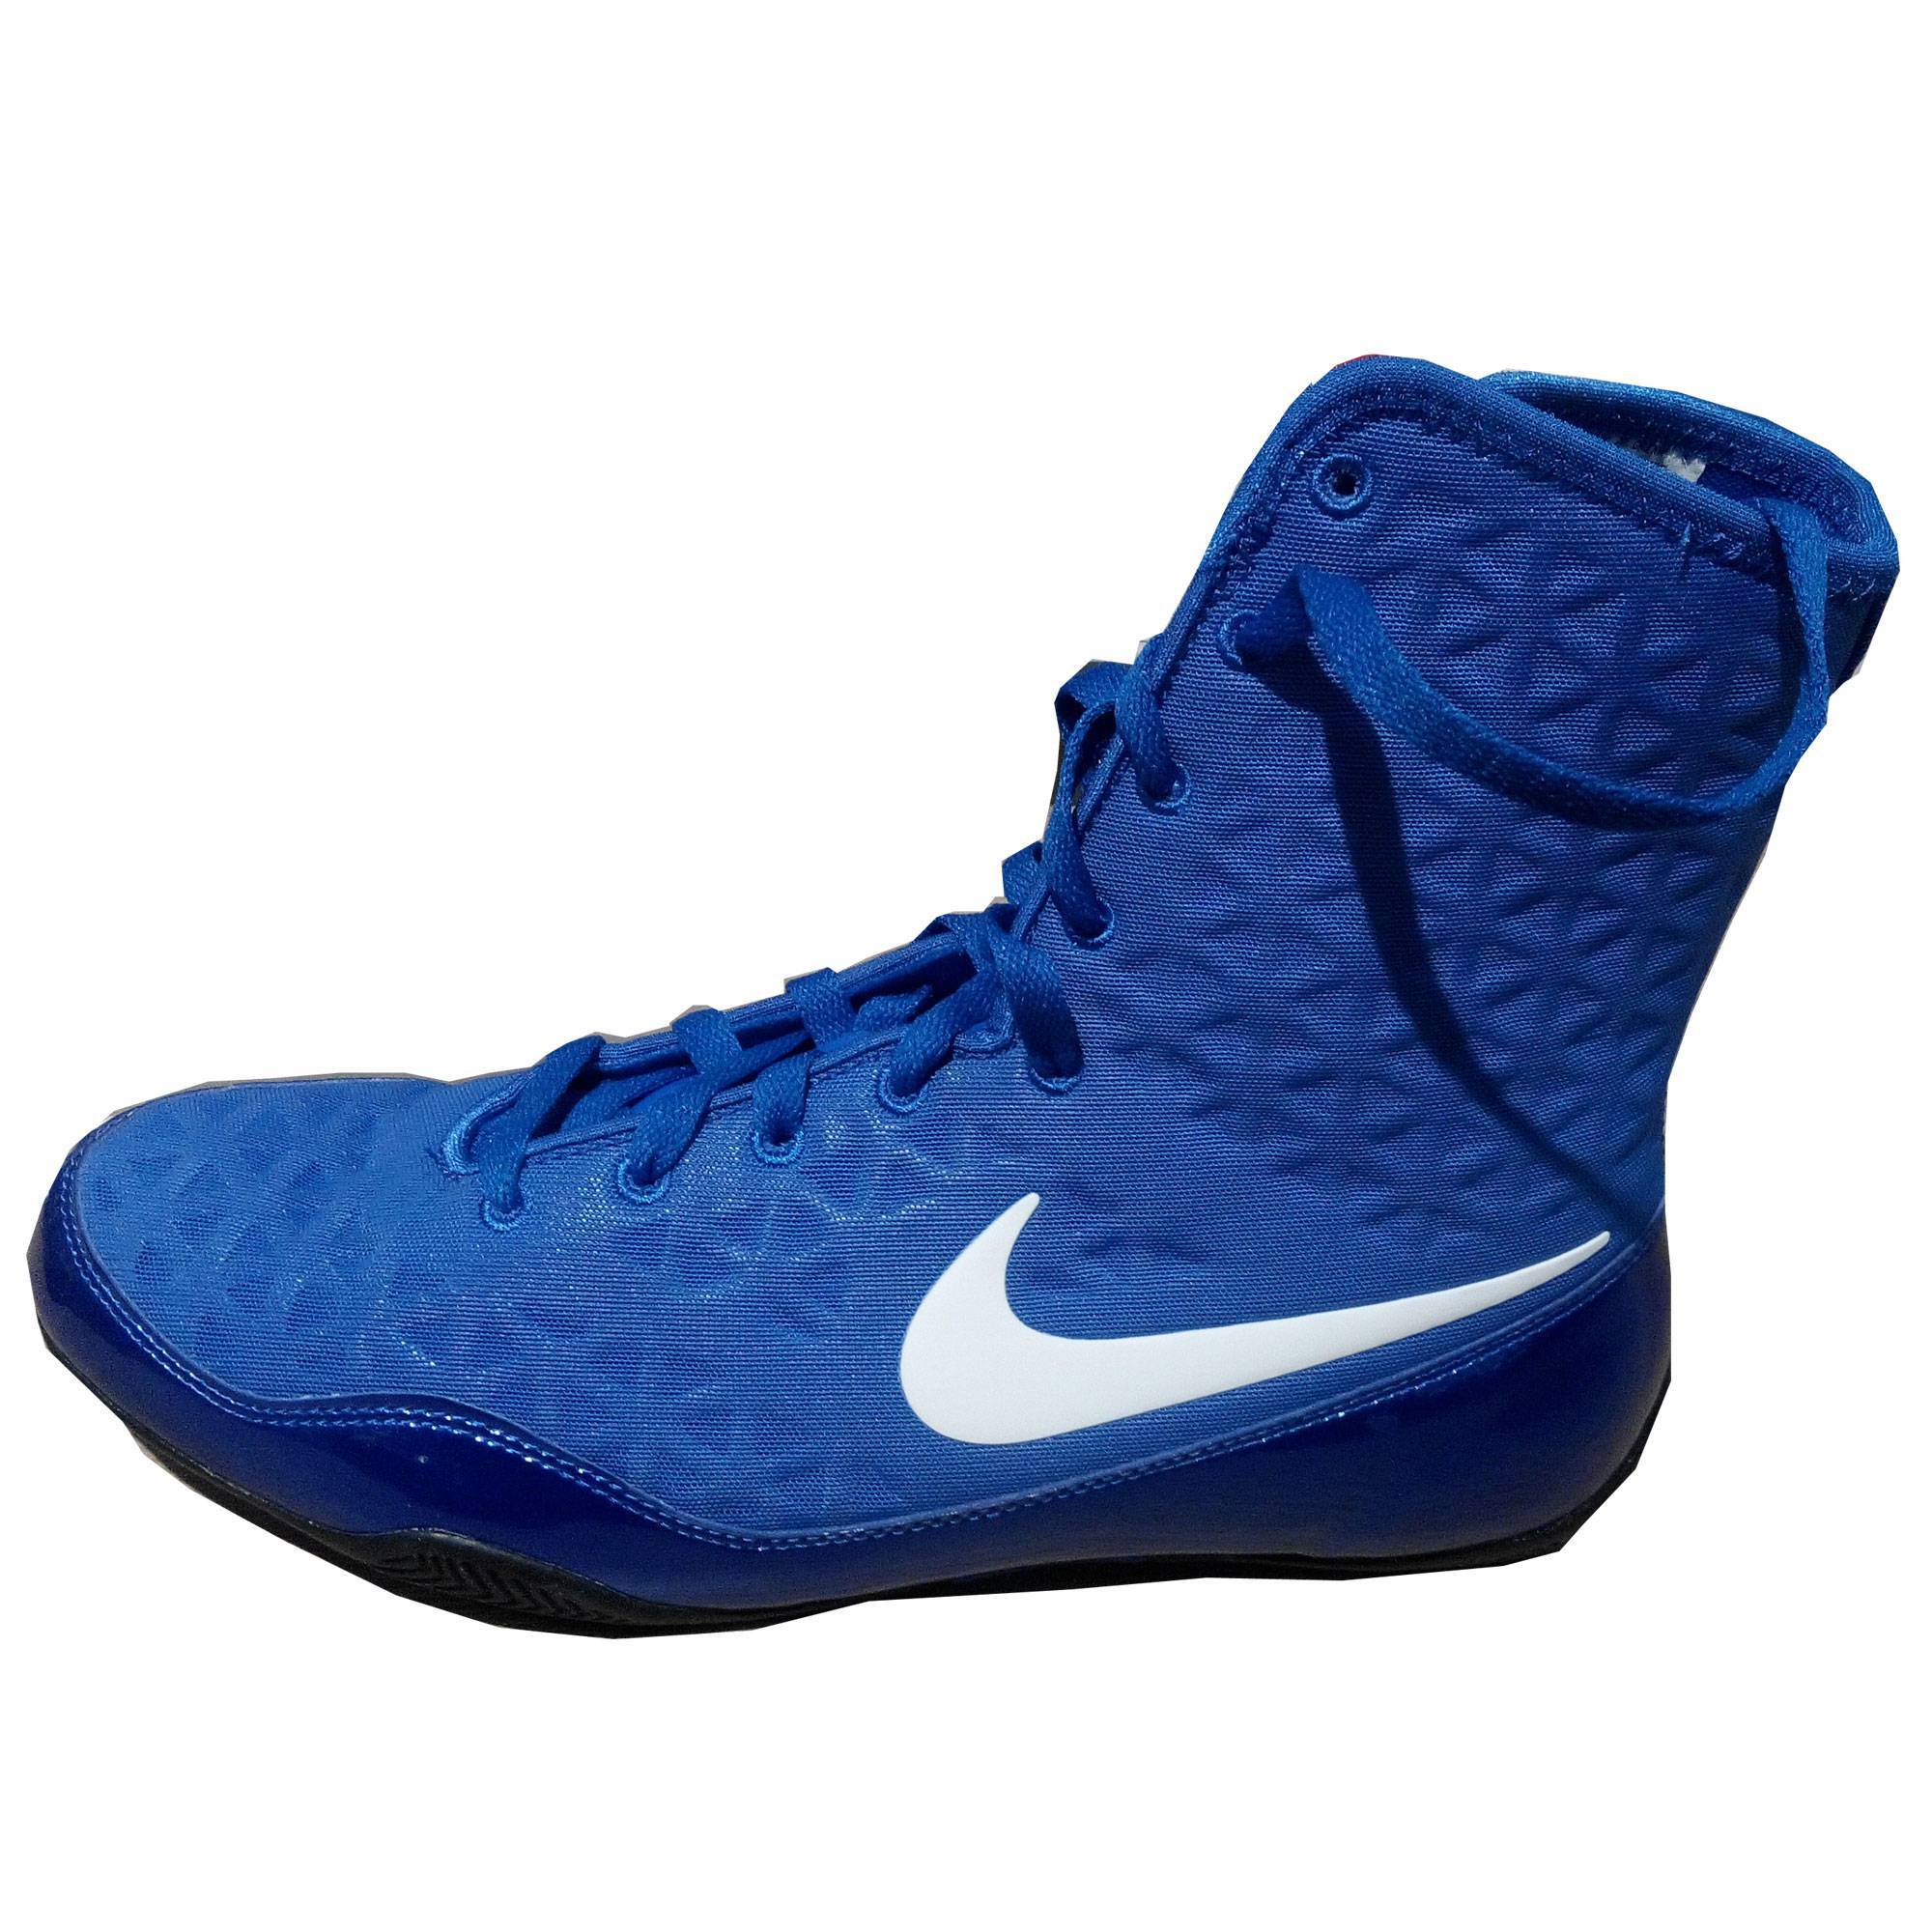 Боксерски найк. Боксерки Nike ko. Nike Pack боксерки. Боксерки Nike синие. Боксерки Nike 38 размер.